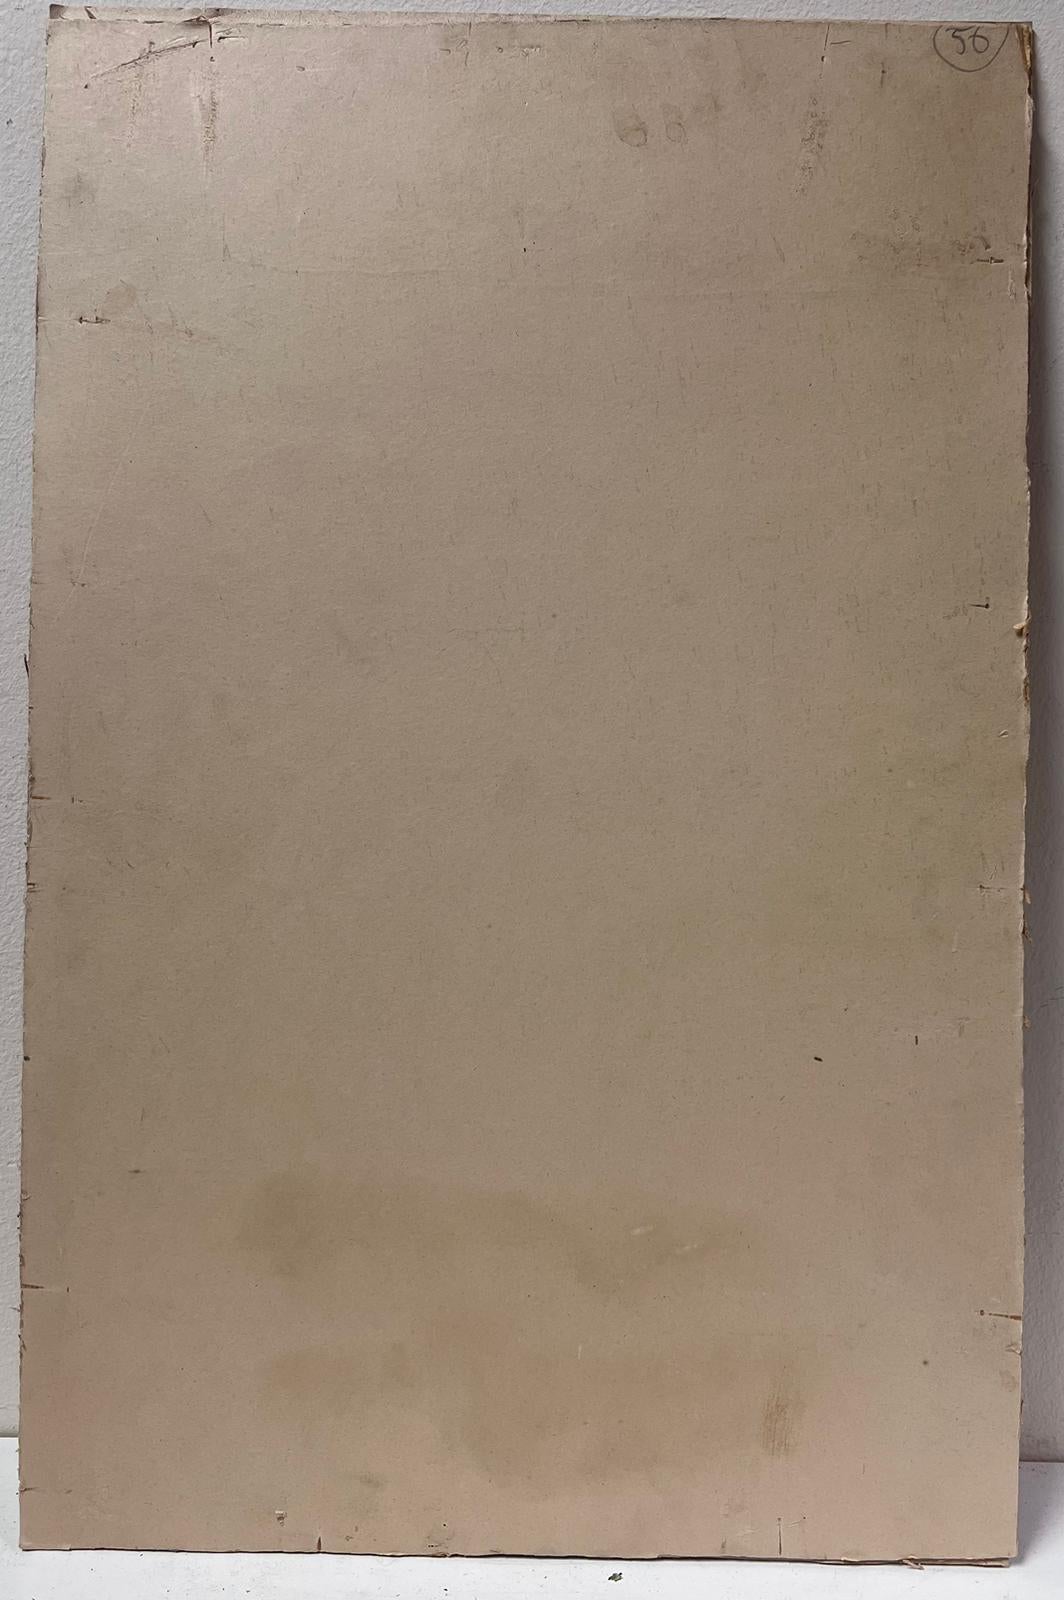 Der Löwe von St. Markus
Venezianischer Alter Meister, Mitte 18.
Kreis von Giovanni Battista Tiepolo (Venezianer, 1696-1770)
Tusche- und Aquarellzeichnung auf Papier, auf einen Papprahmen montiert, ungerahmt
Kartenrahmen: 20,75 x 13 Zoll
Gemälde: 12